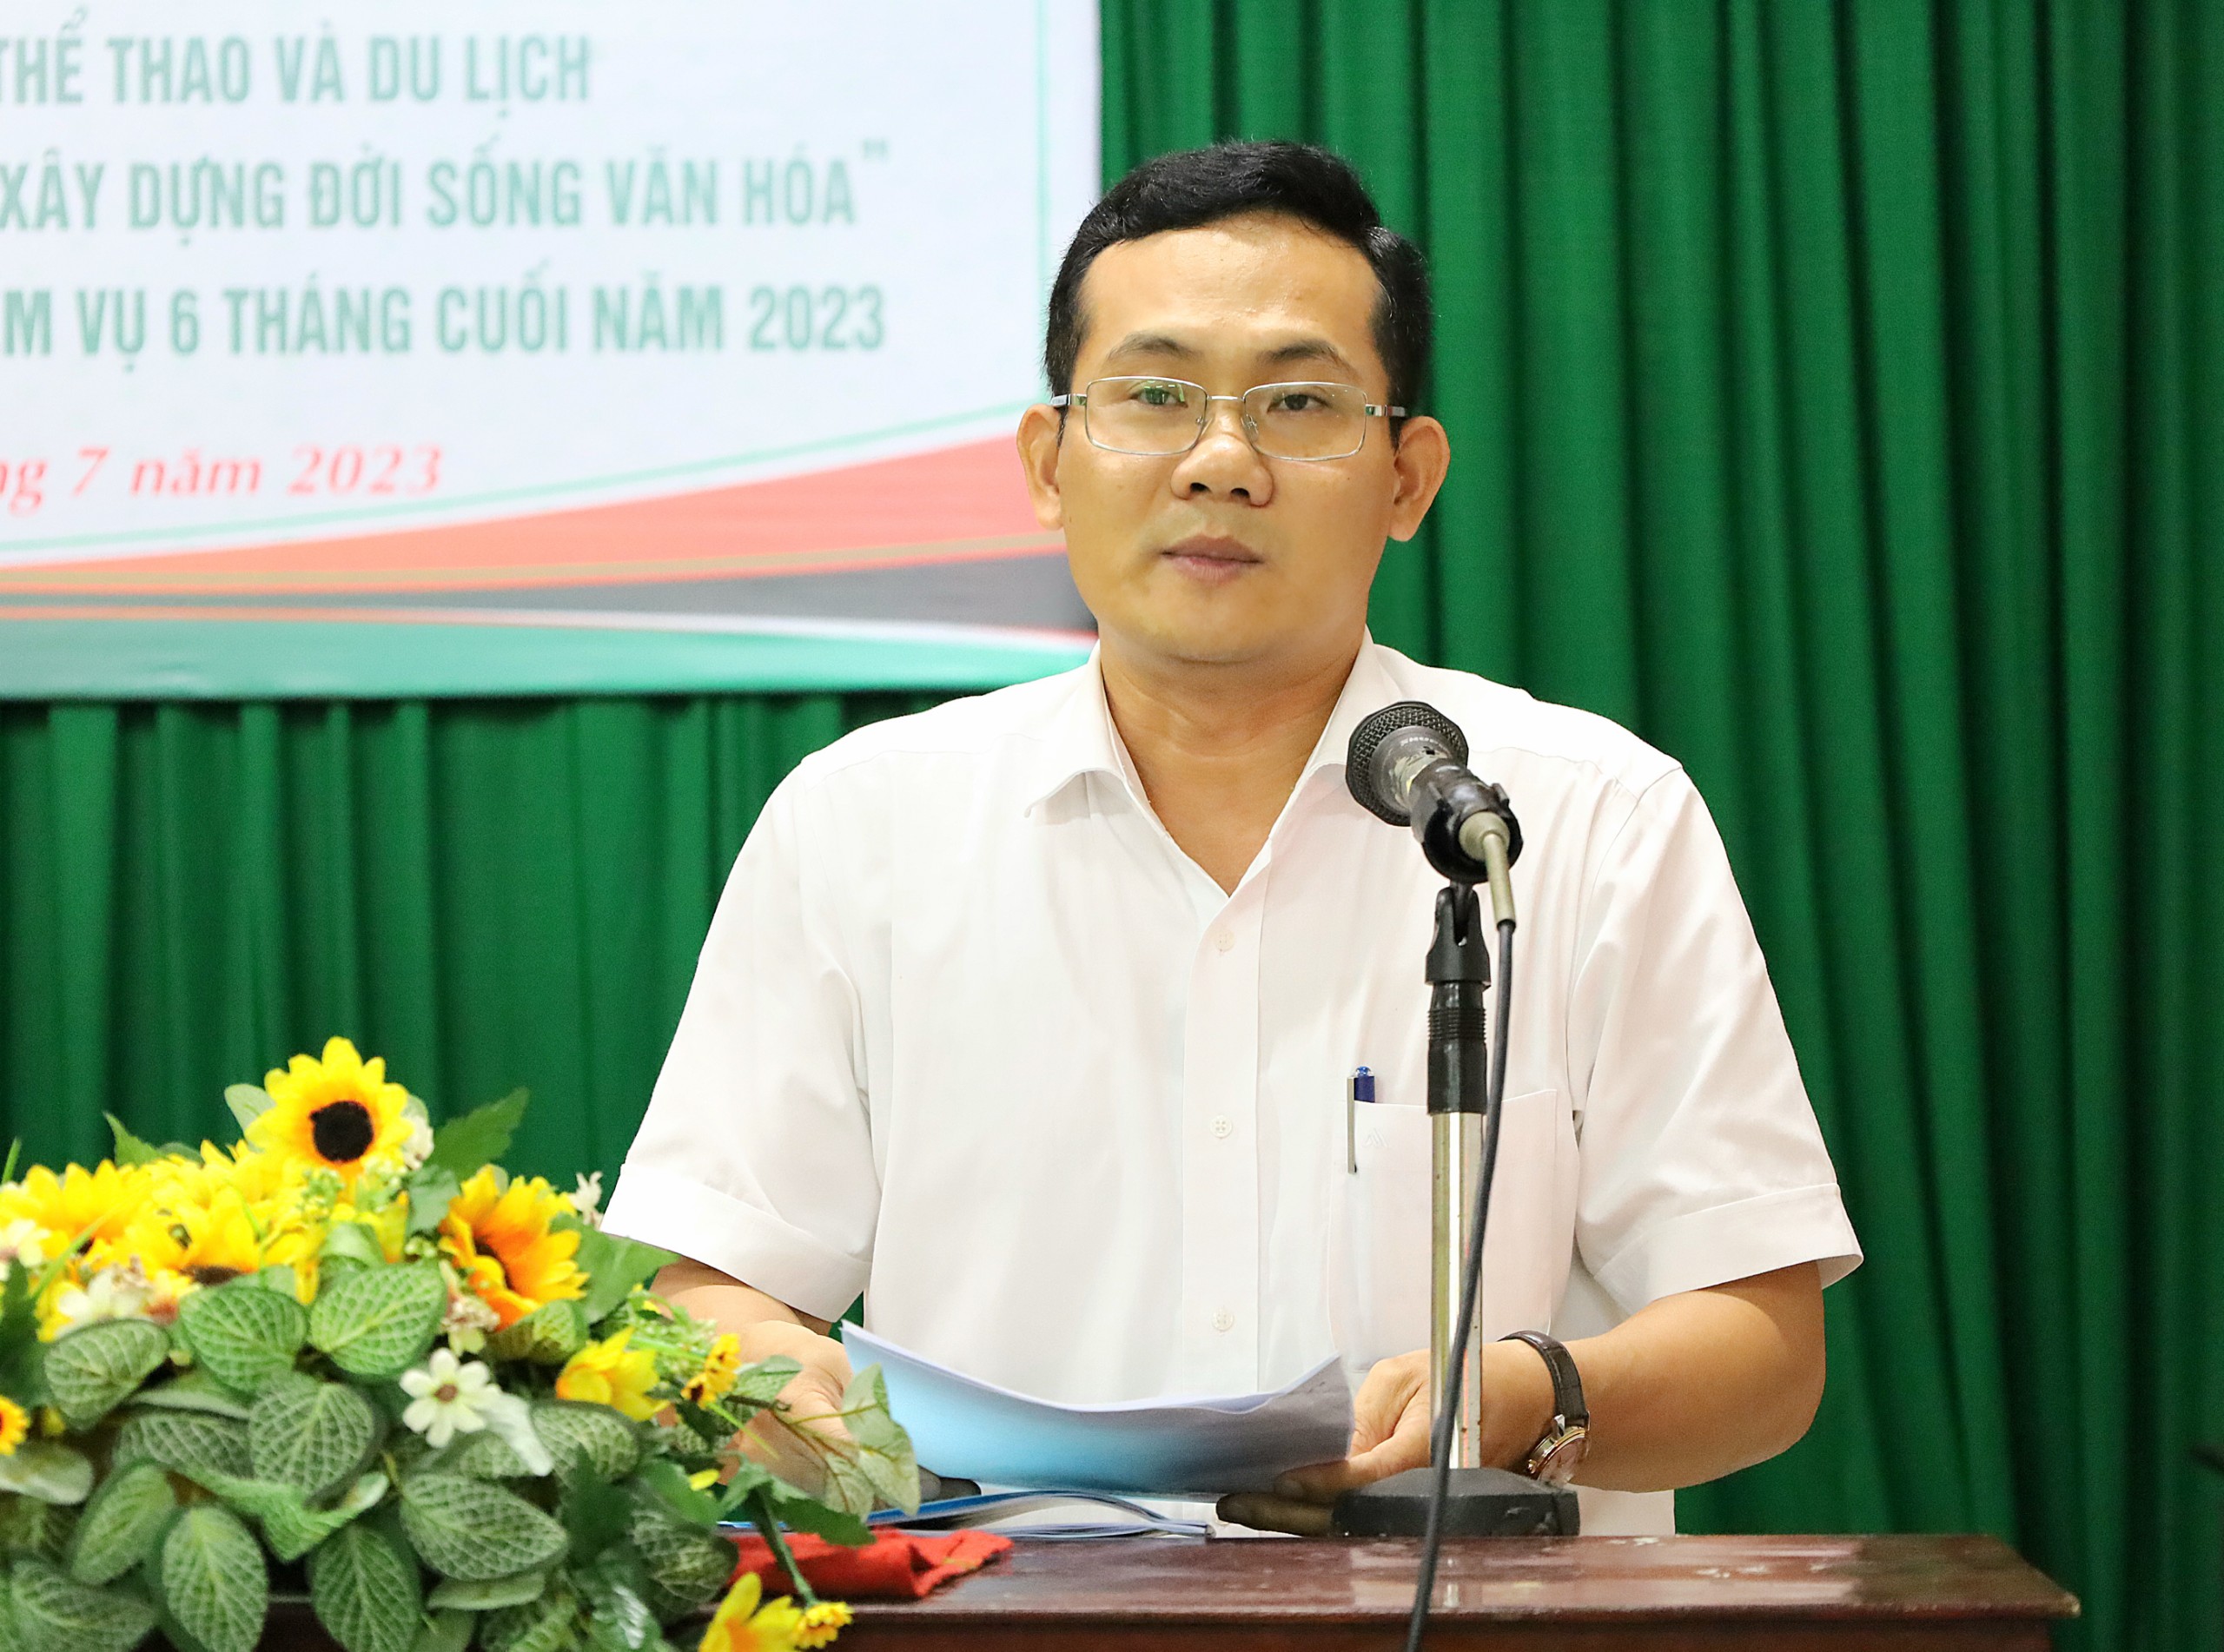 Ông Nguyễn Minh Tuấn - Giám đốc Sở Văn hóa, Thể thao và Du lịch TP. Cần Thơ phát biểu tại hội nghị.